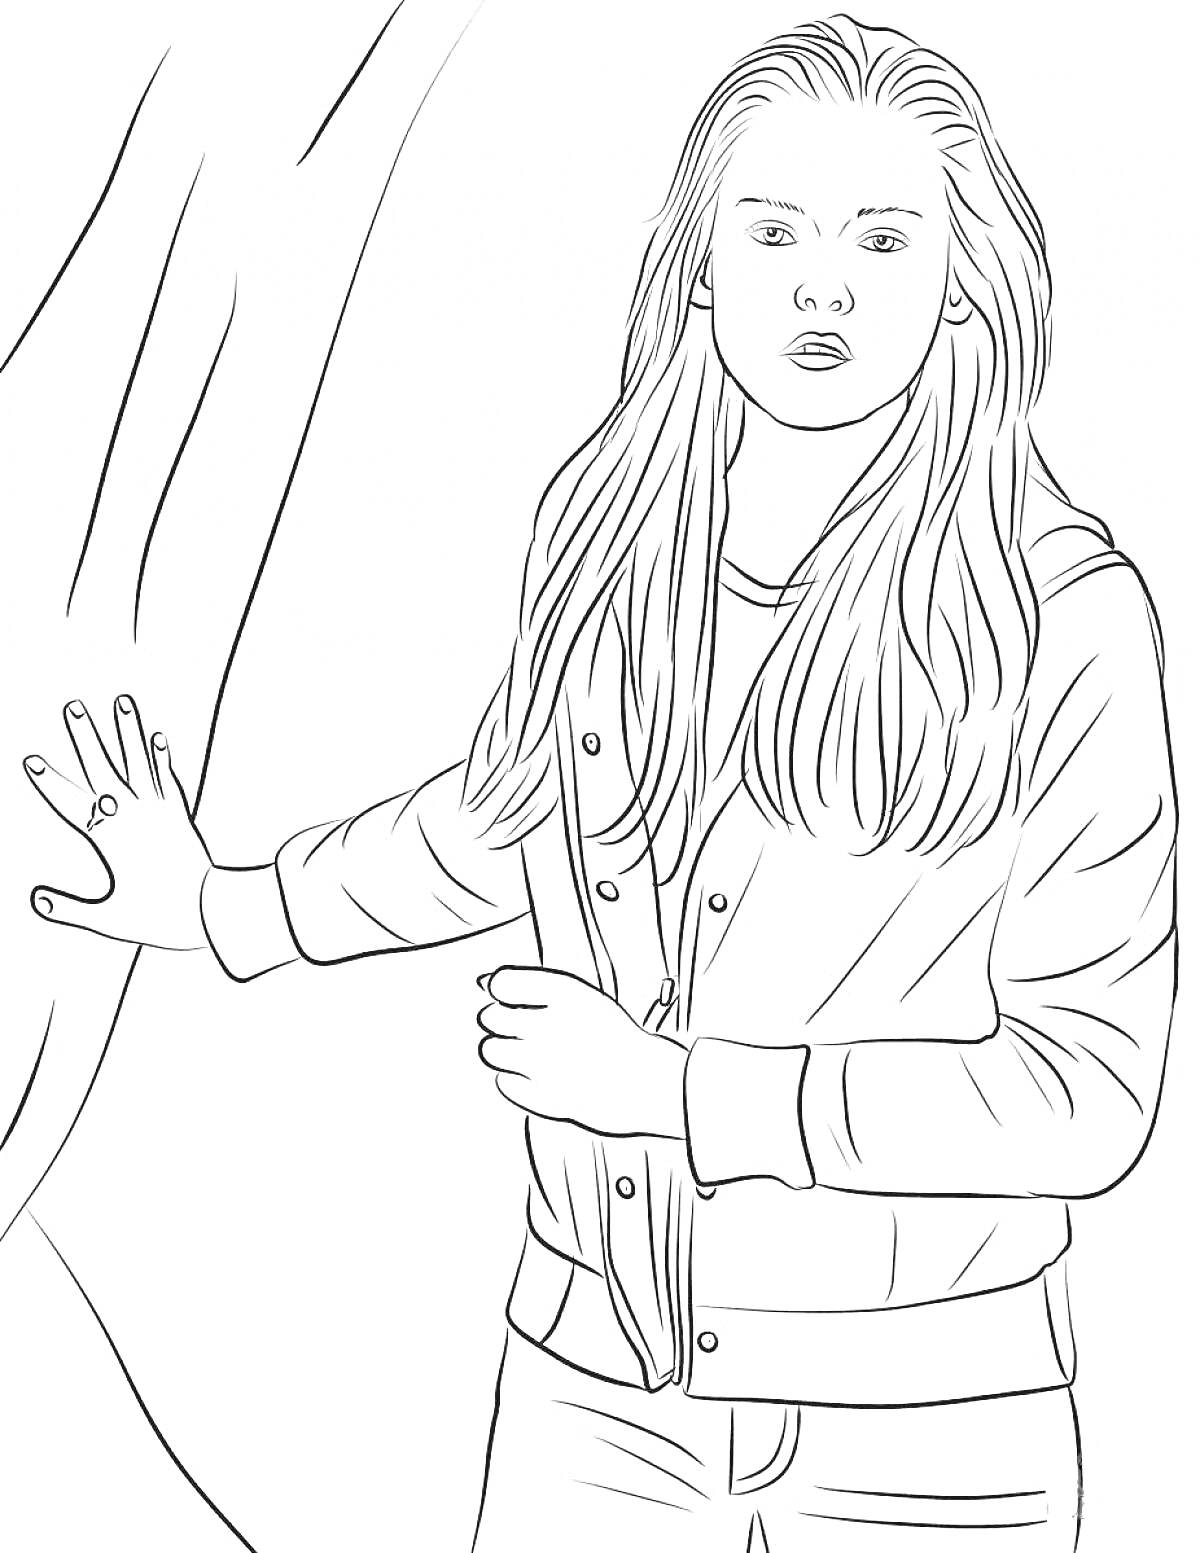 Раскраска Девушка у дерева, одетая в куртку и с длинными волосами.